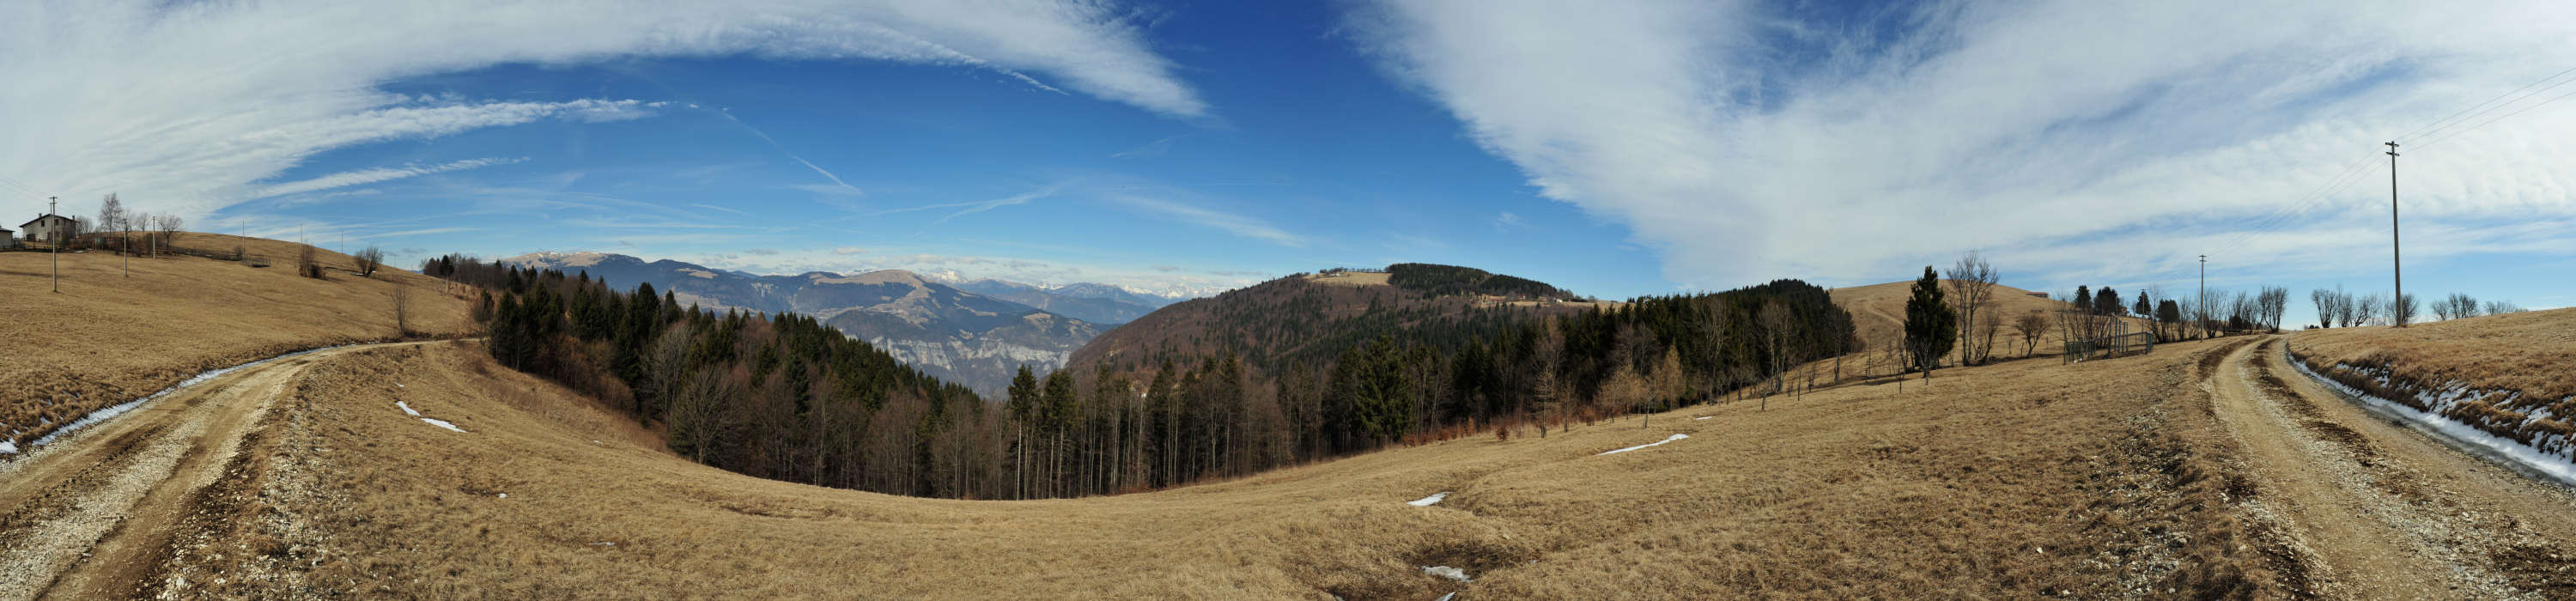 Col Moschin, Monte Grappa - fotografia panoramica